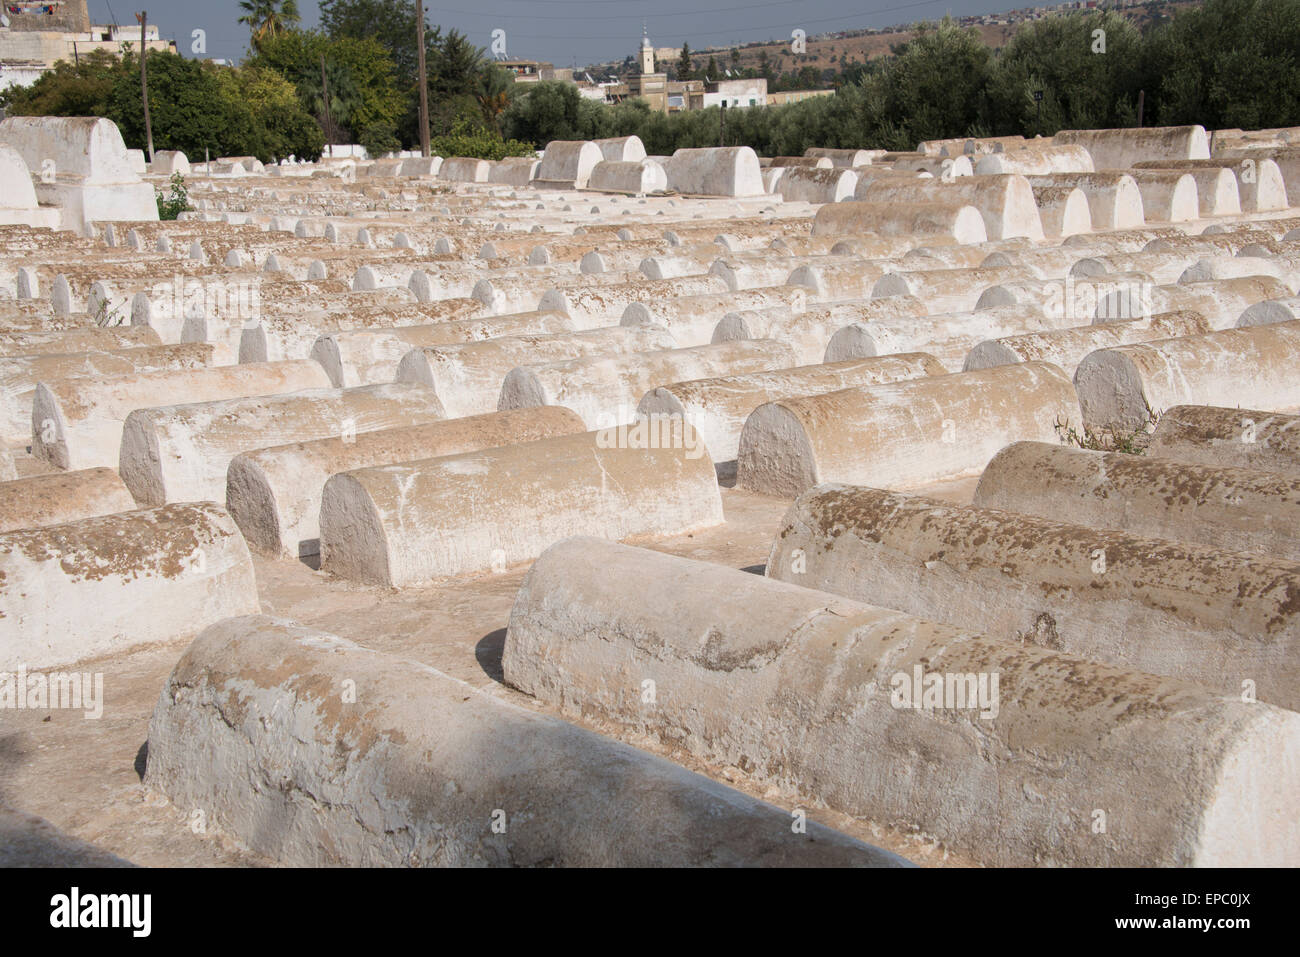 Por encima del suelo sitios de sepultura en el cementerio judío en el barrio judío de Fez; en Fes, Marruecos Foto de stock